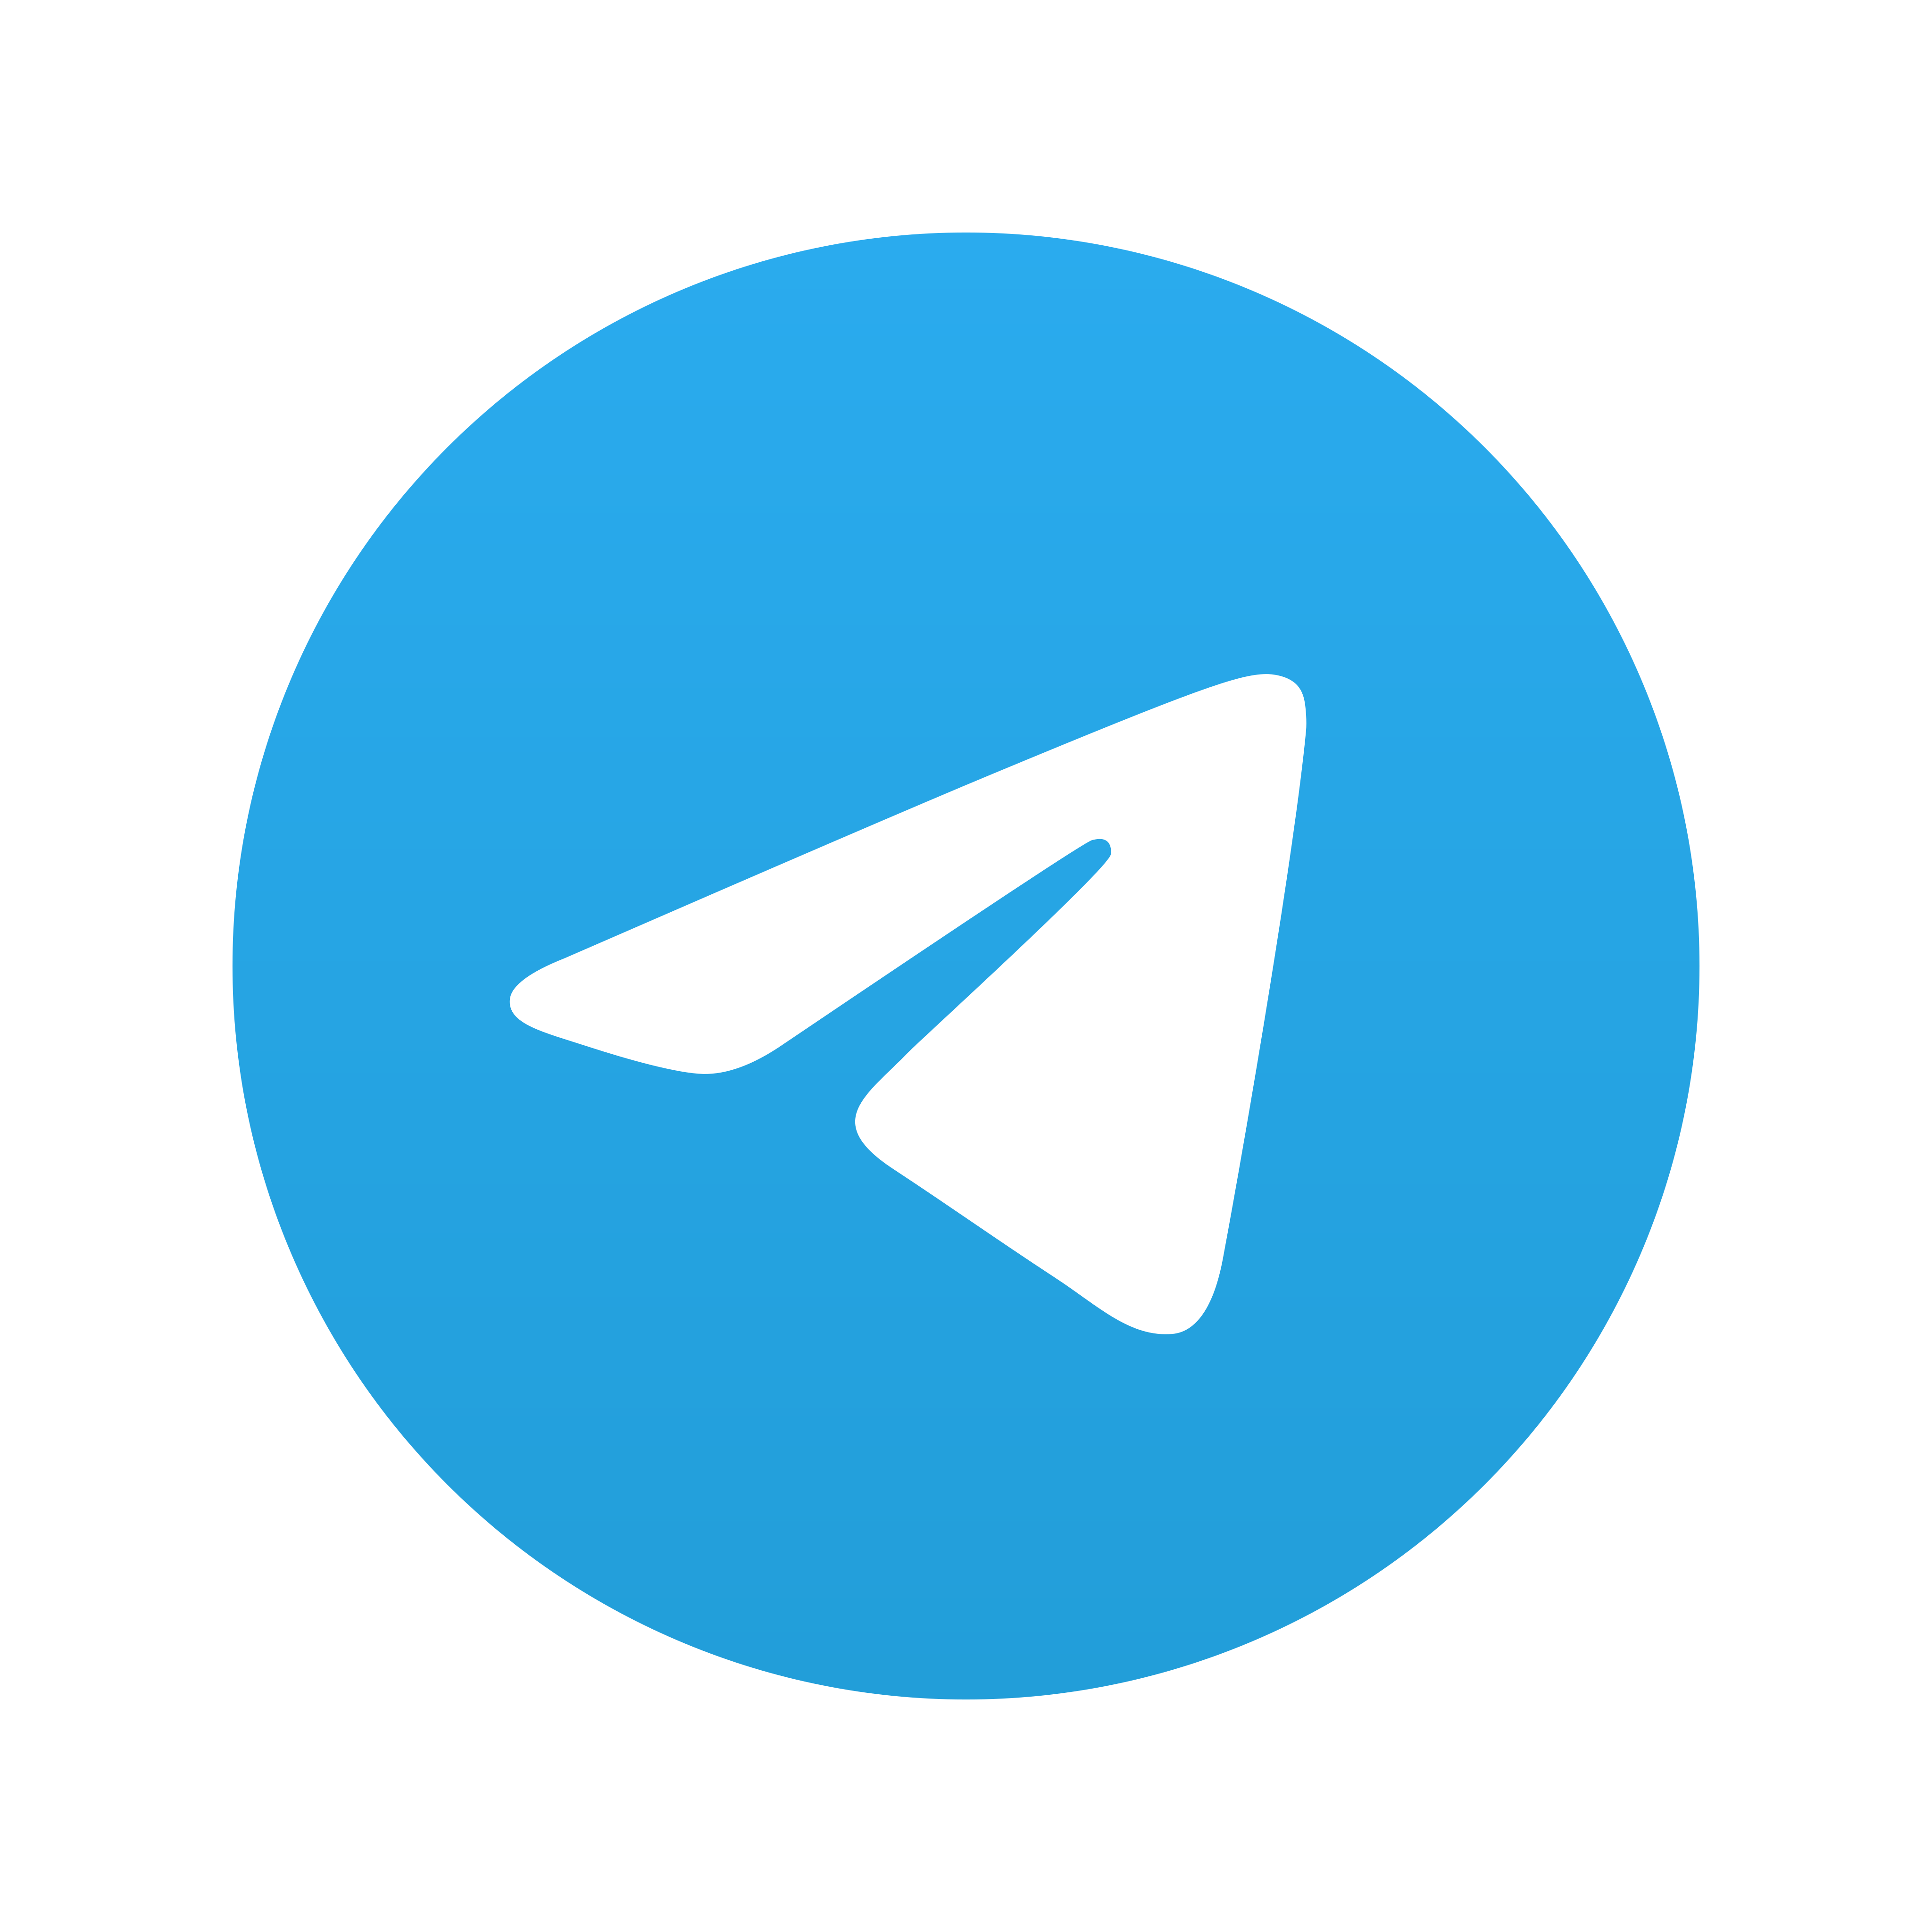 telegram logo 0 1 - Telegram Logo